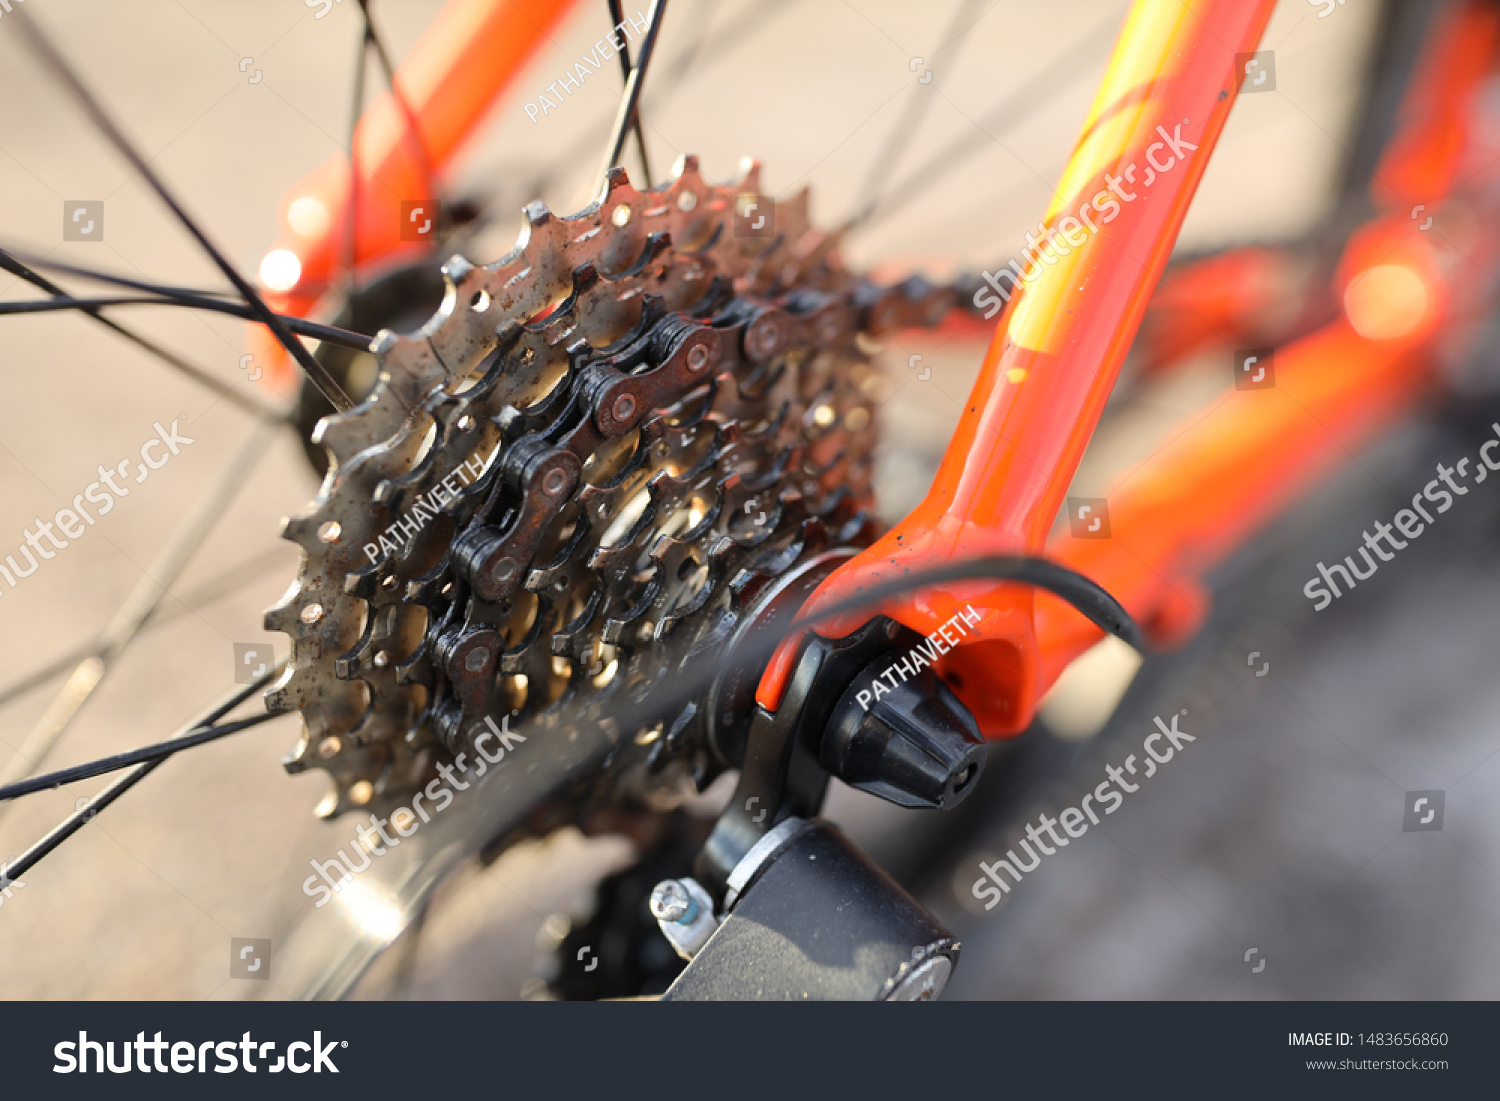 sprocket road bike